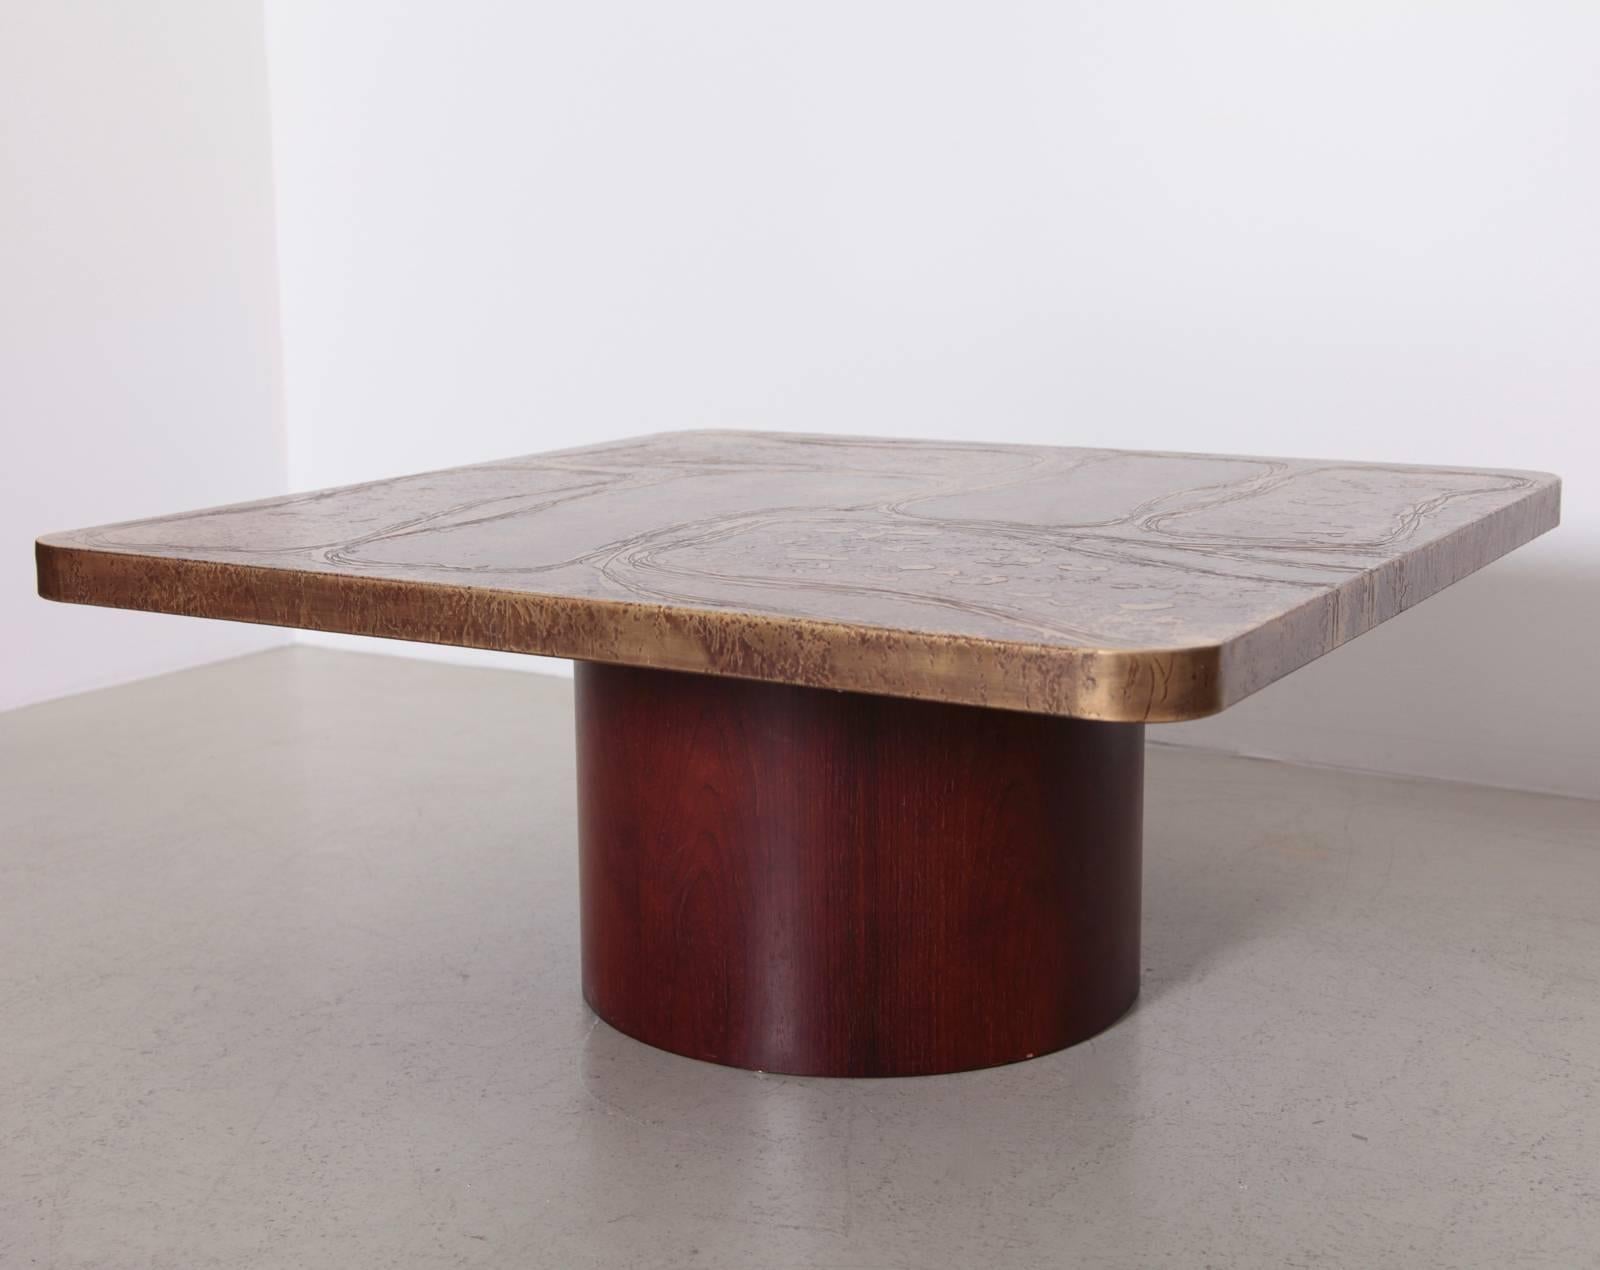 Très rare table basse avec un plateau en laiton gravé sur un support en bois  base en contreplaqué du designer allemand Heinz Lilienthal. La table est en excellent état.

